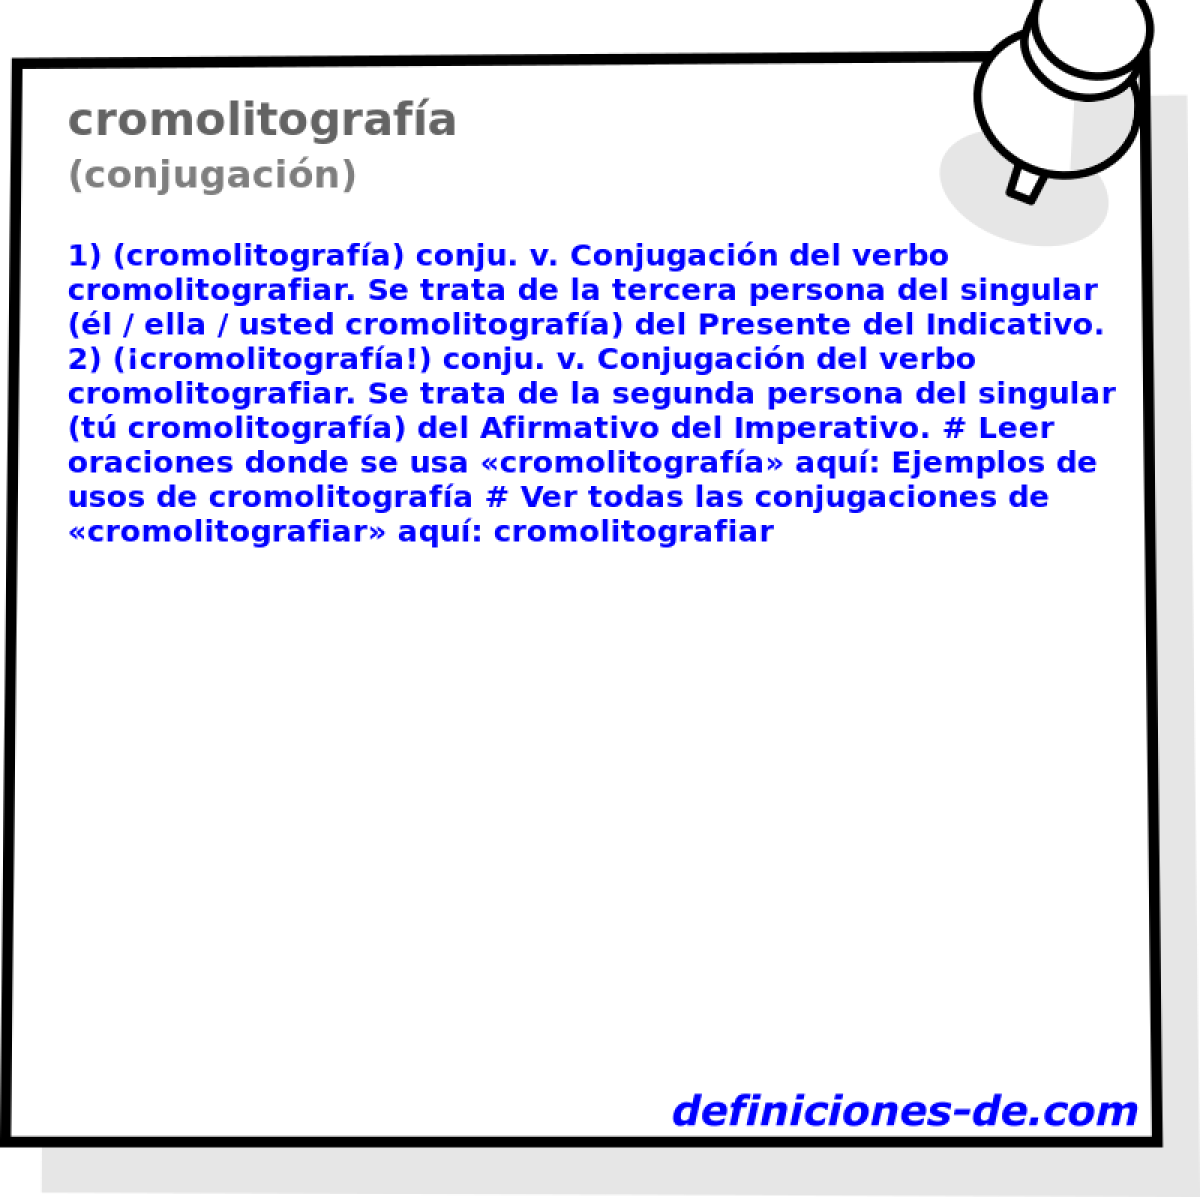 cromolitografa (conjugacin)